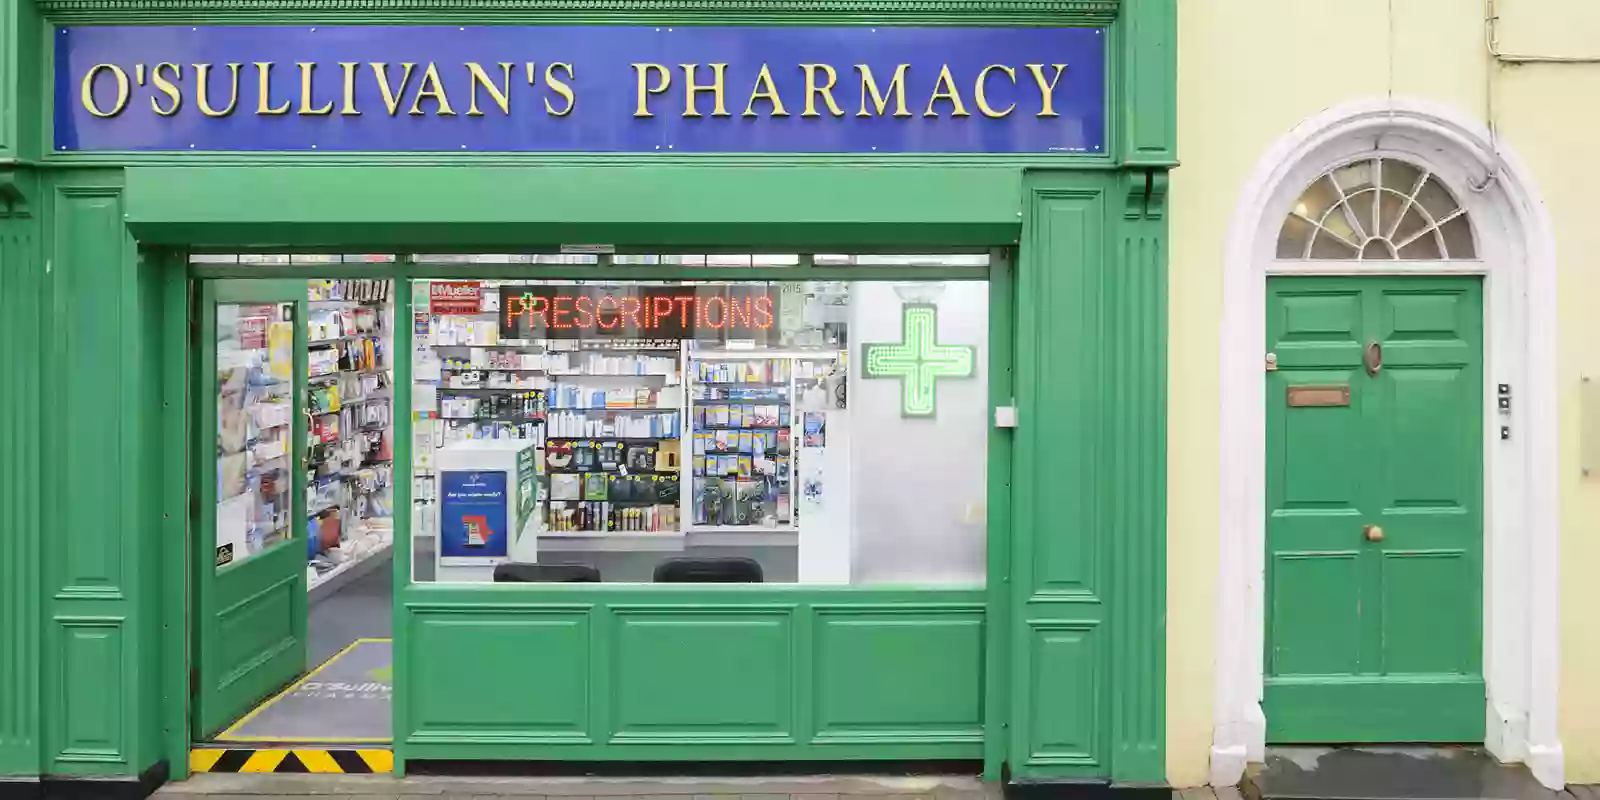 O'Sullivan's Pharmacy Killarney